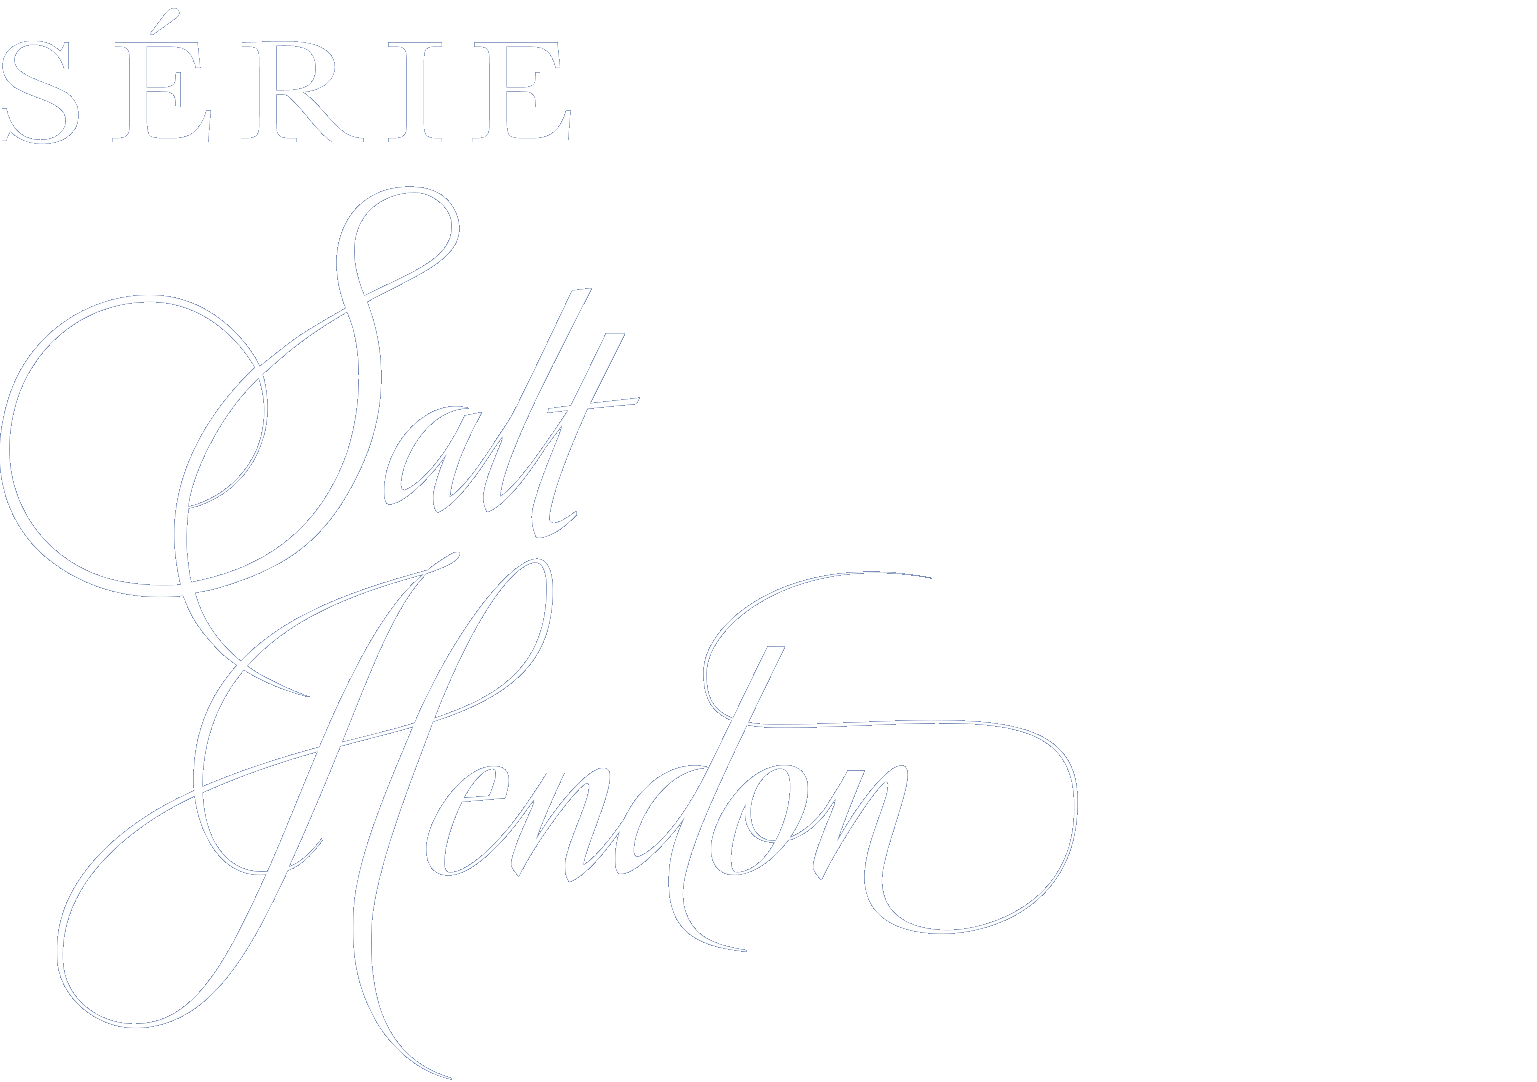 Série Salt Hendon